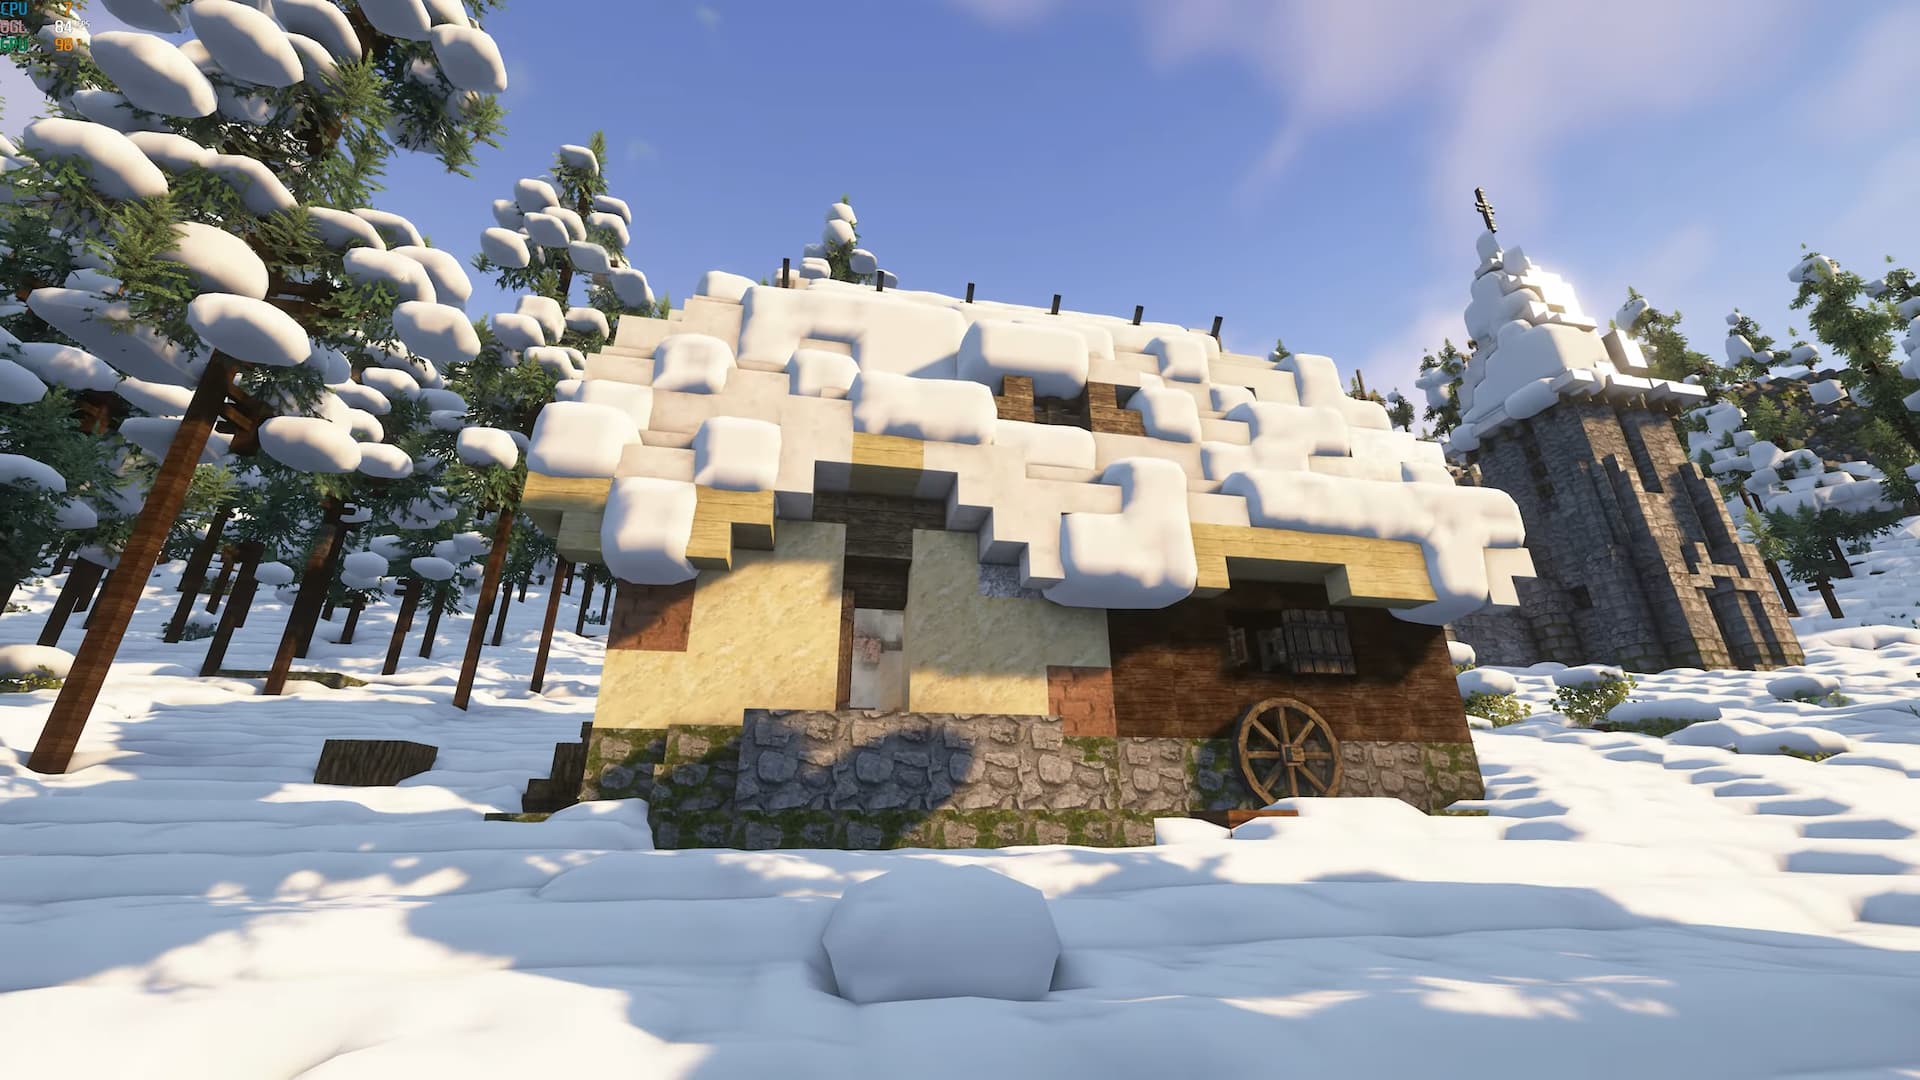 Animação mostra como seria um Minecraft com gráficos mais realistas - Vida  de Gamer